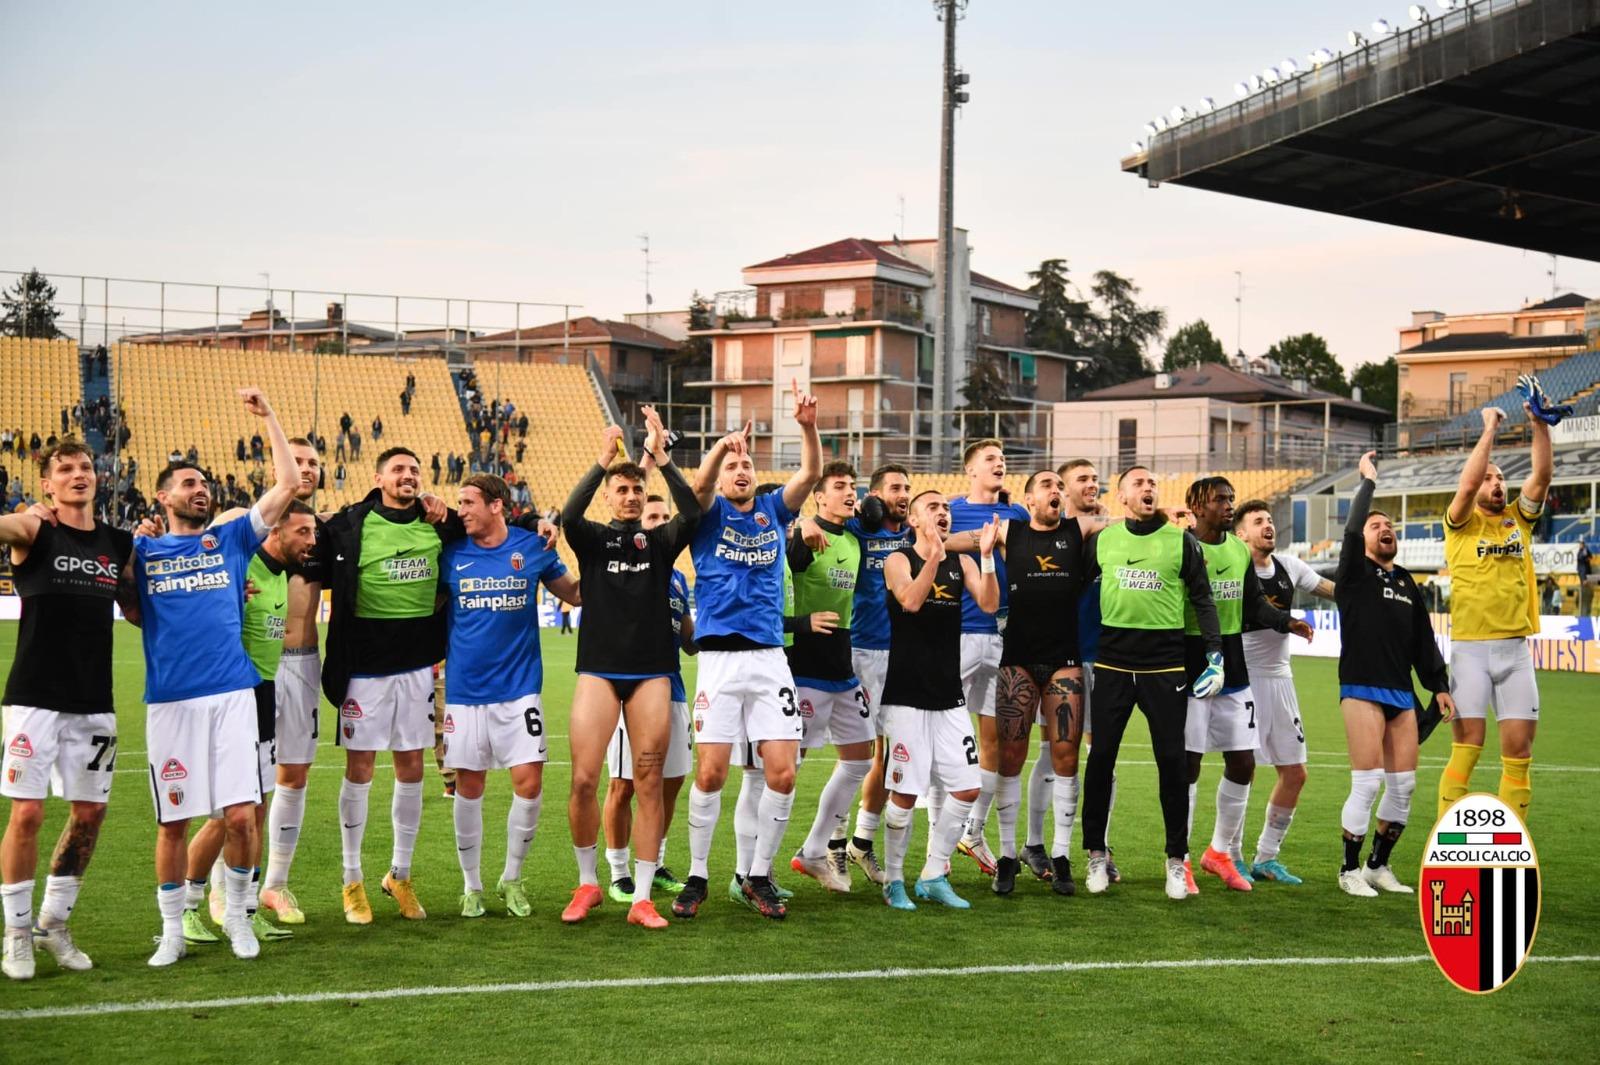 Ascoli-Cittadella: 4.350 tifosi bianconeri prenotati tra mini abbonamenti e biglietti